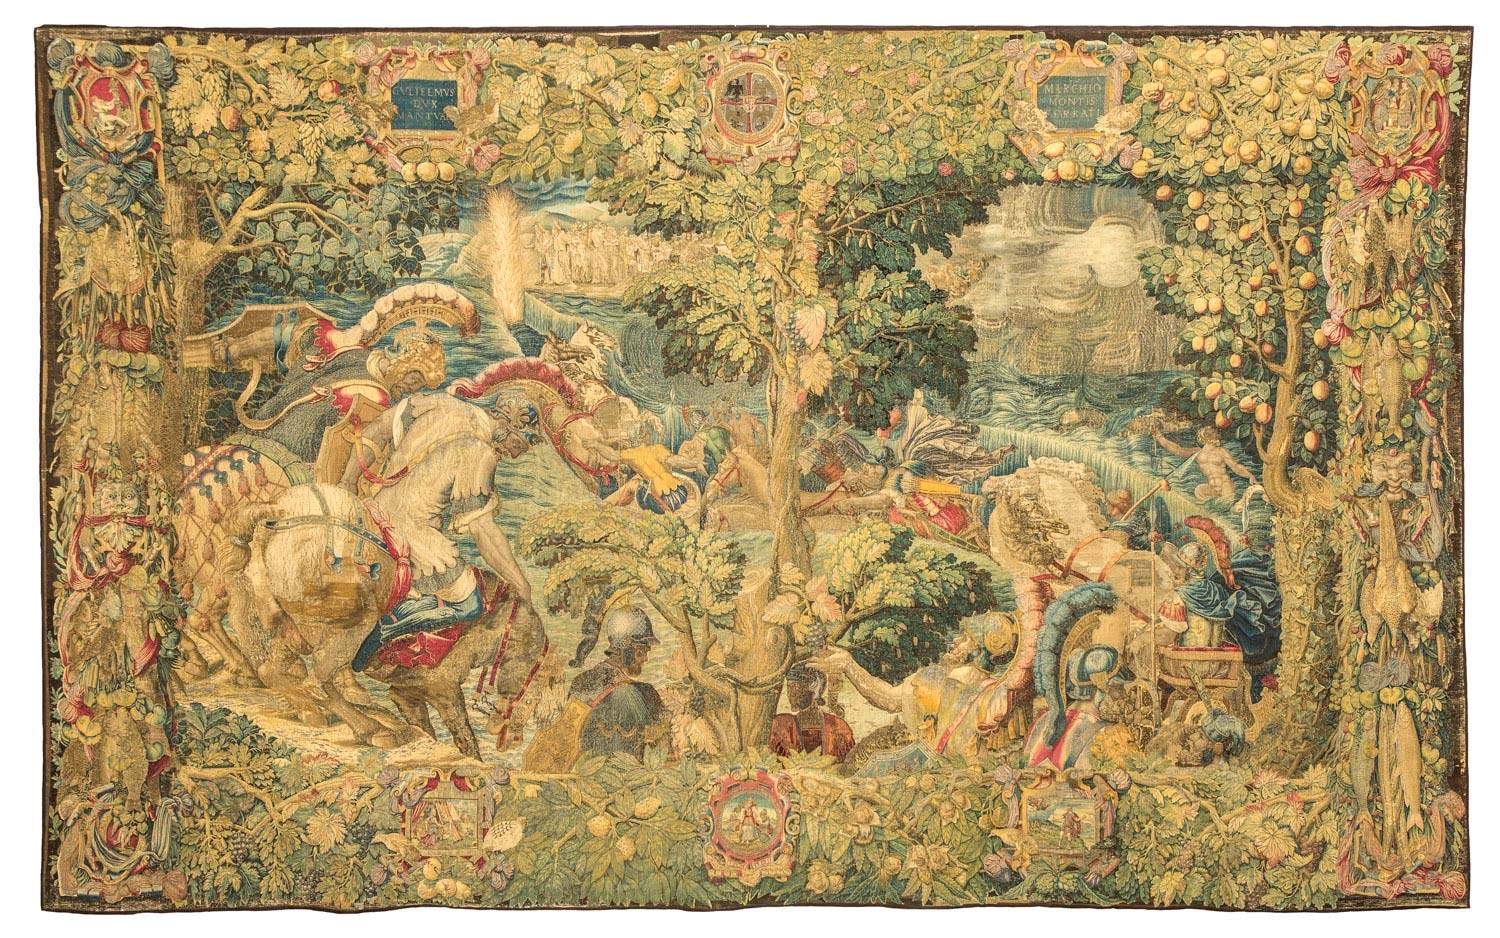 Milan, une exposition de dessins du XVIIIe siècle reproduisant les tapisseries Gonzaga du Duomo